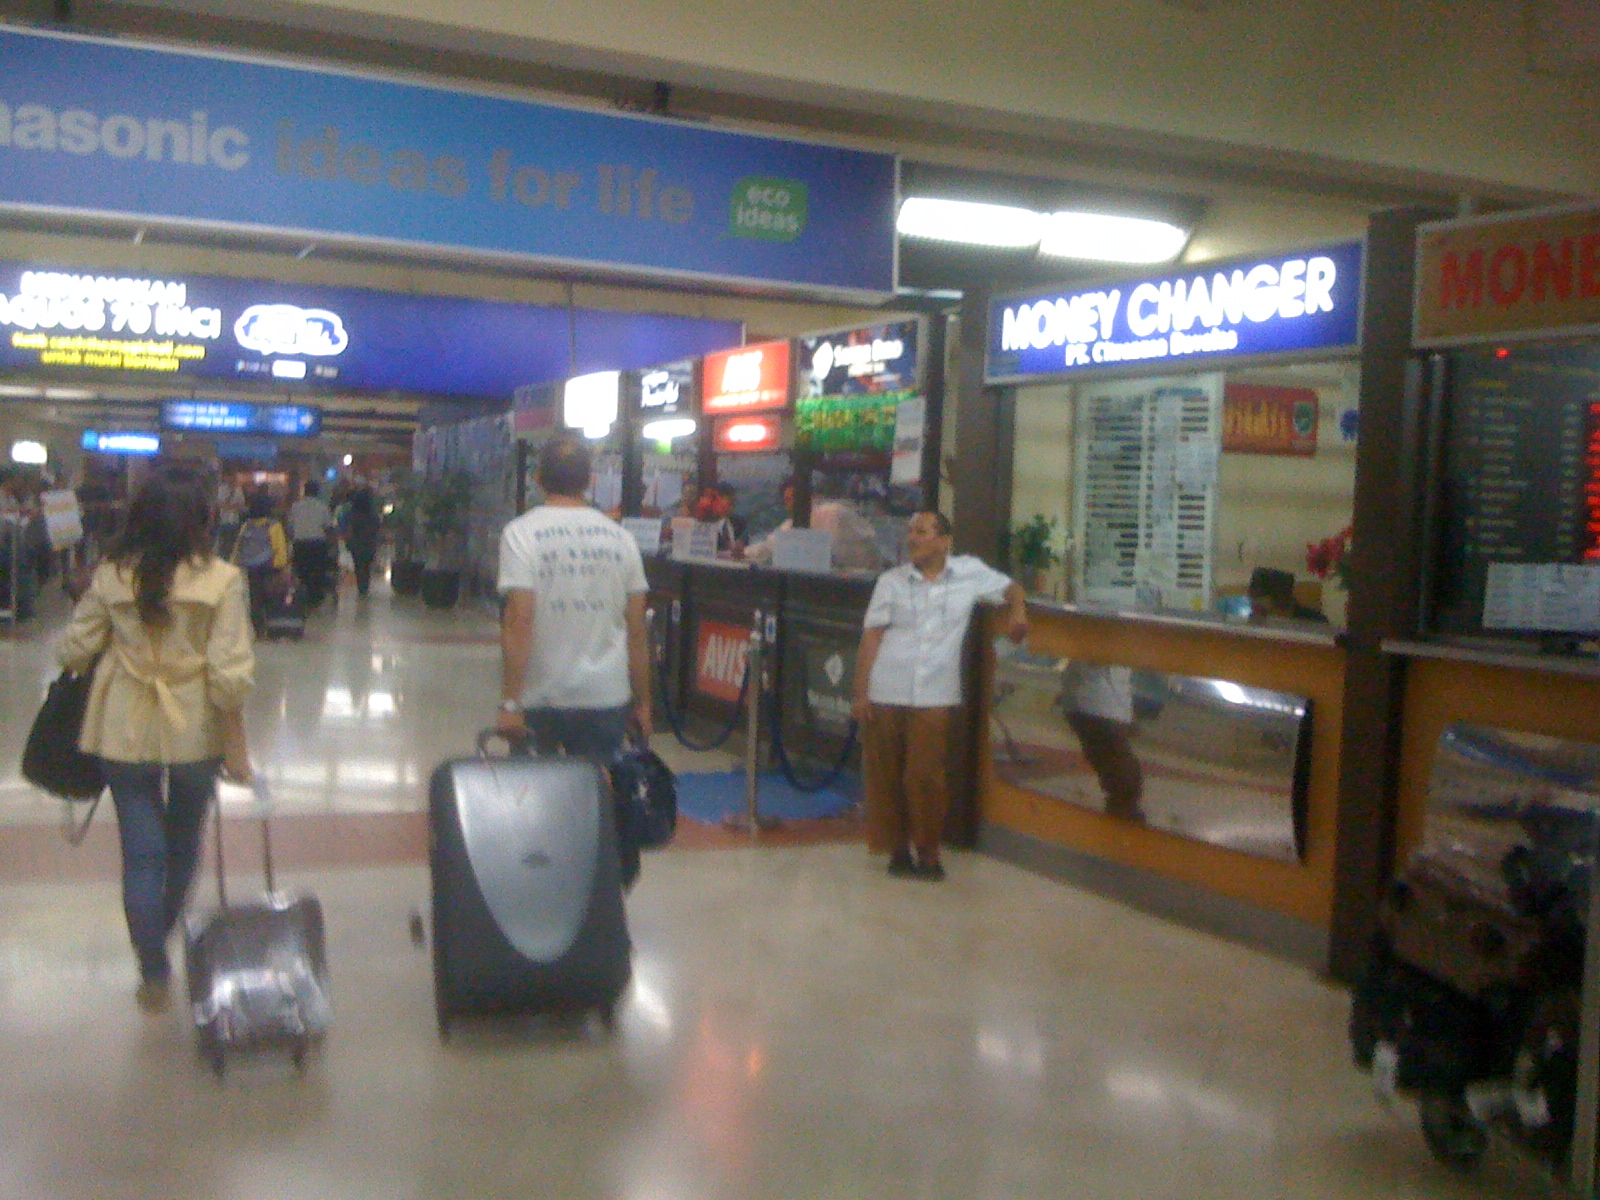 ジャカルタ国際空港の到着ビザ支払い時のお釣りが…